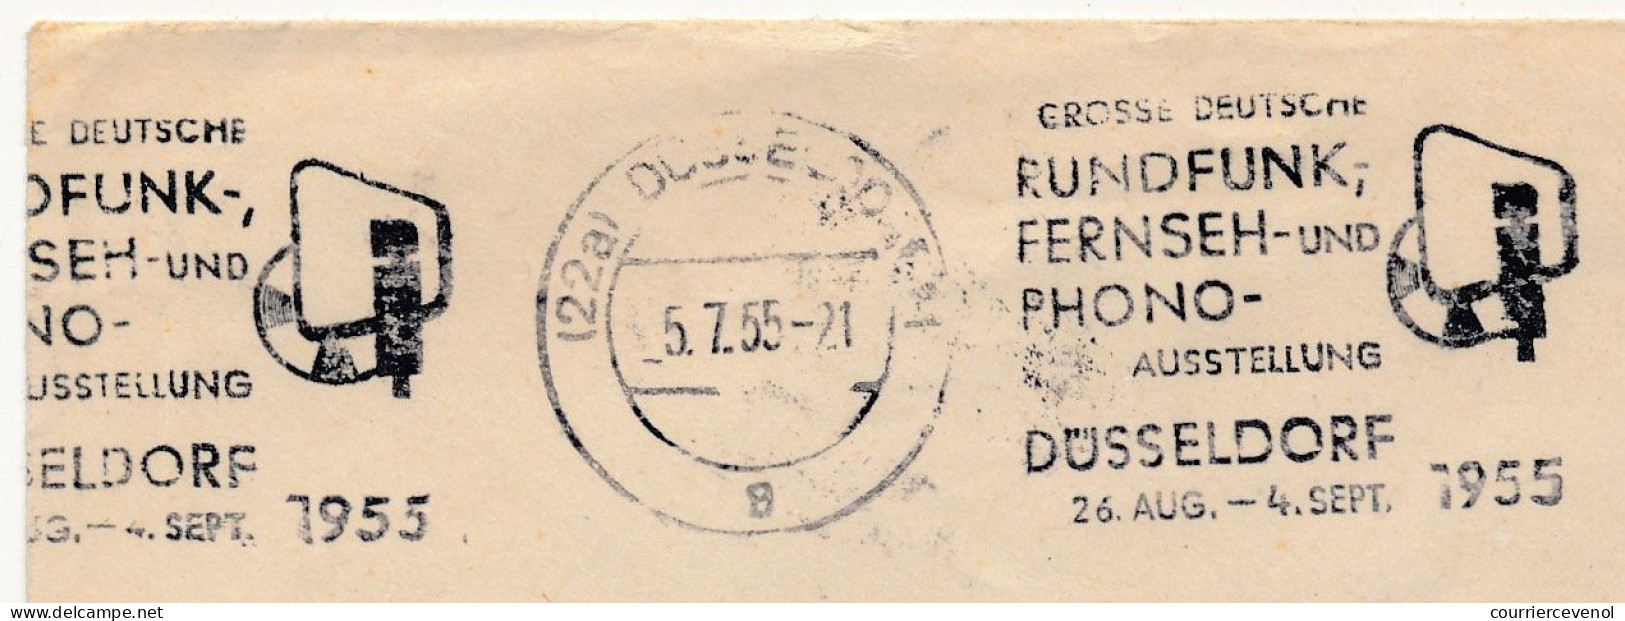 RFA - OMEC Düsseldorf 1955 - Gross Deutsche Rundfunk Fernseh Und Phono Ausstellung - Briefe U. Dokumente